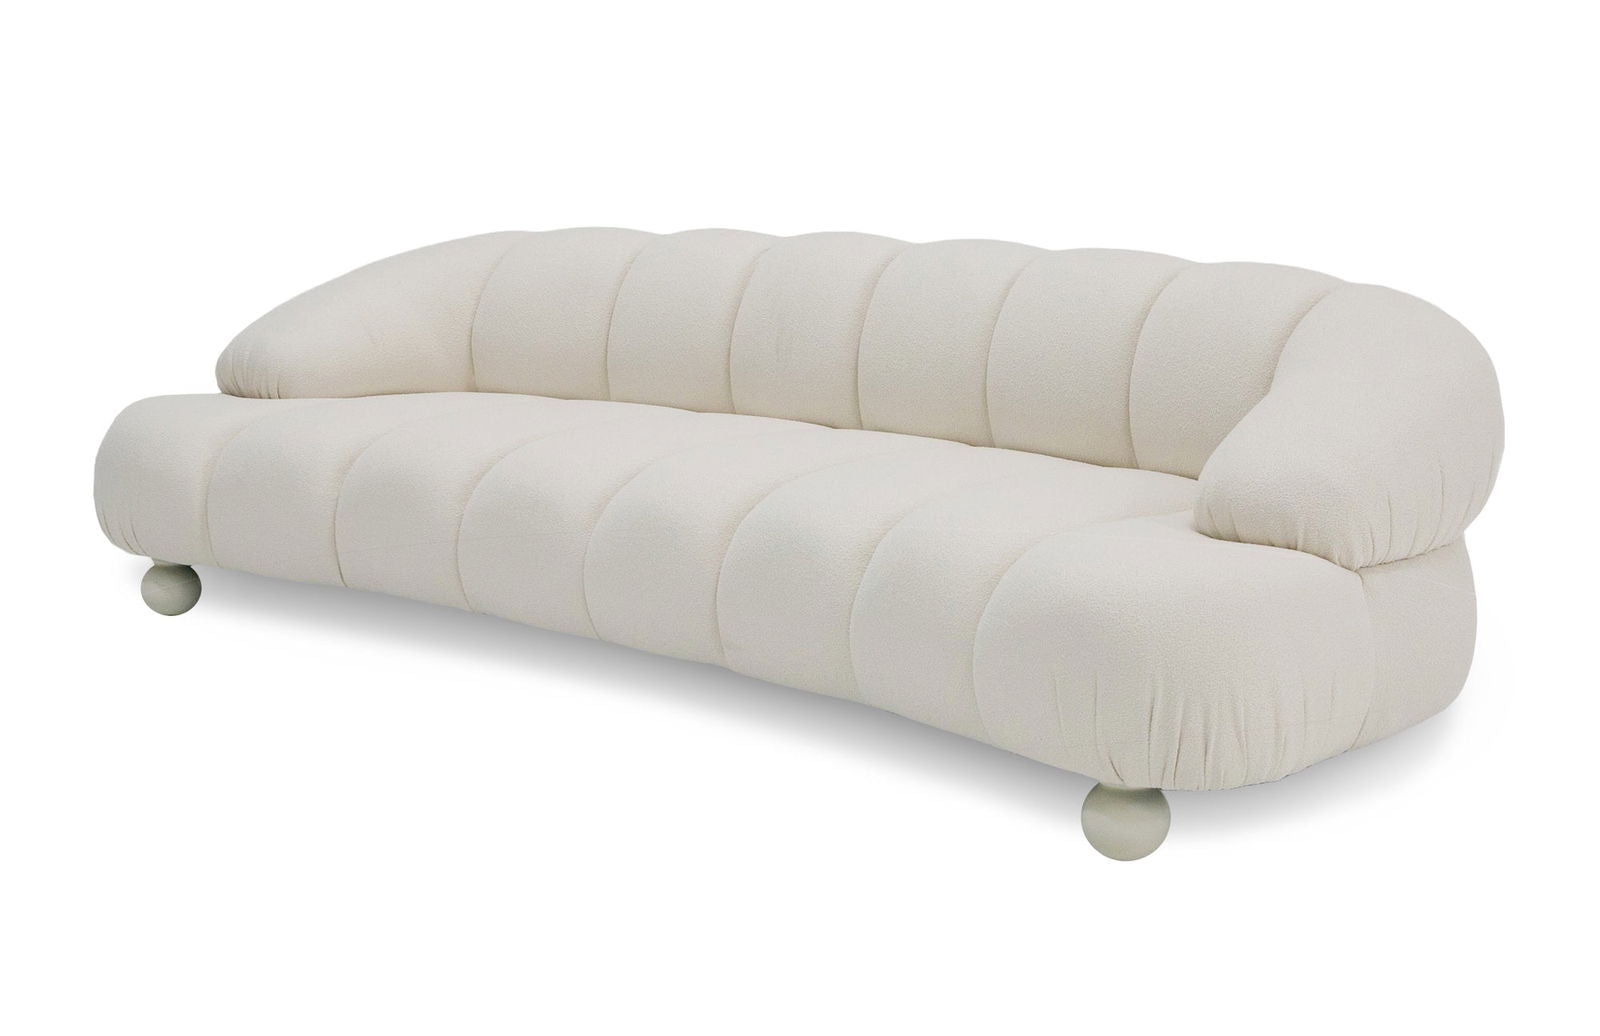 Divani Casa Duran - Contemporary White Fabric 4-Seater Sofa - Mac & Mabel